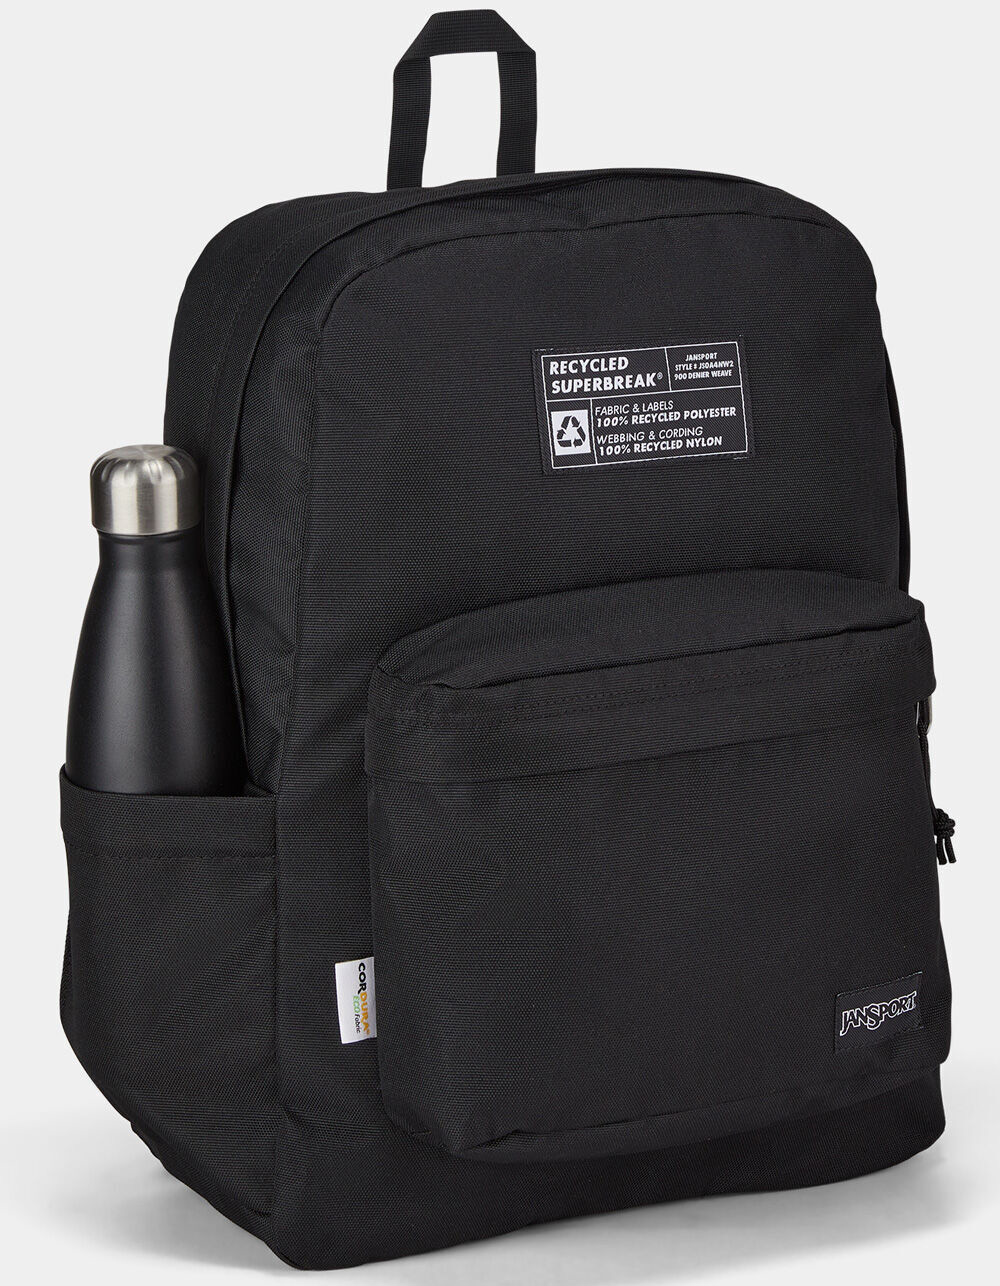 JANSPORT Recycled SuperBreak Backpack - BLACK | Tillys